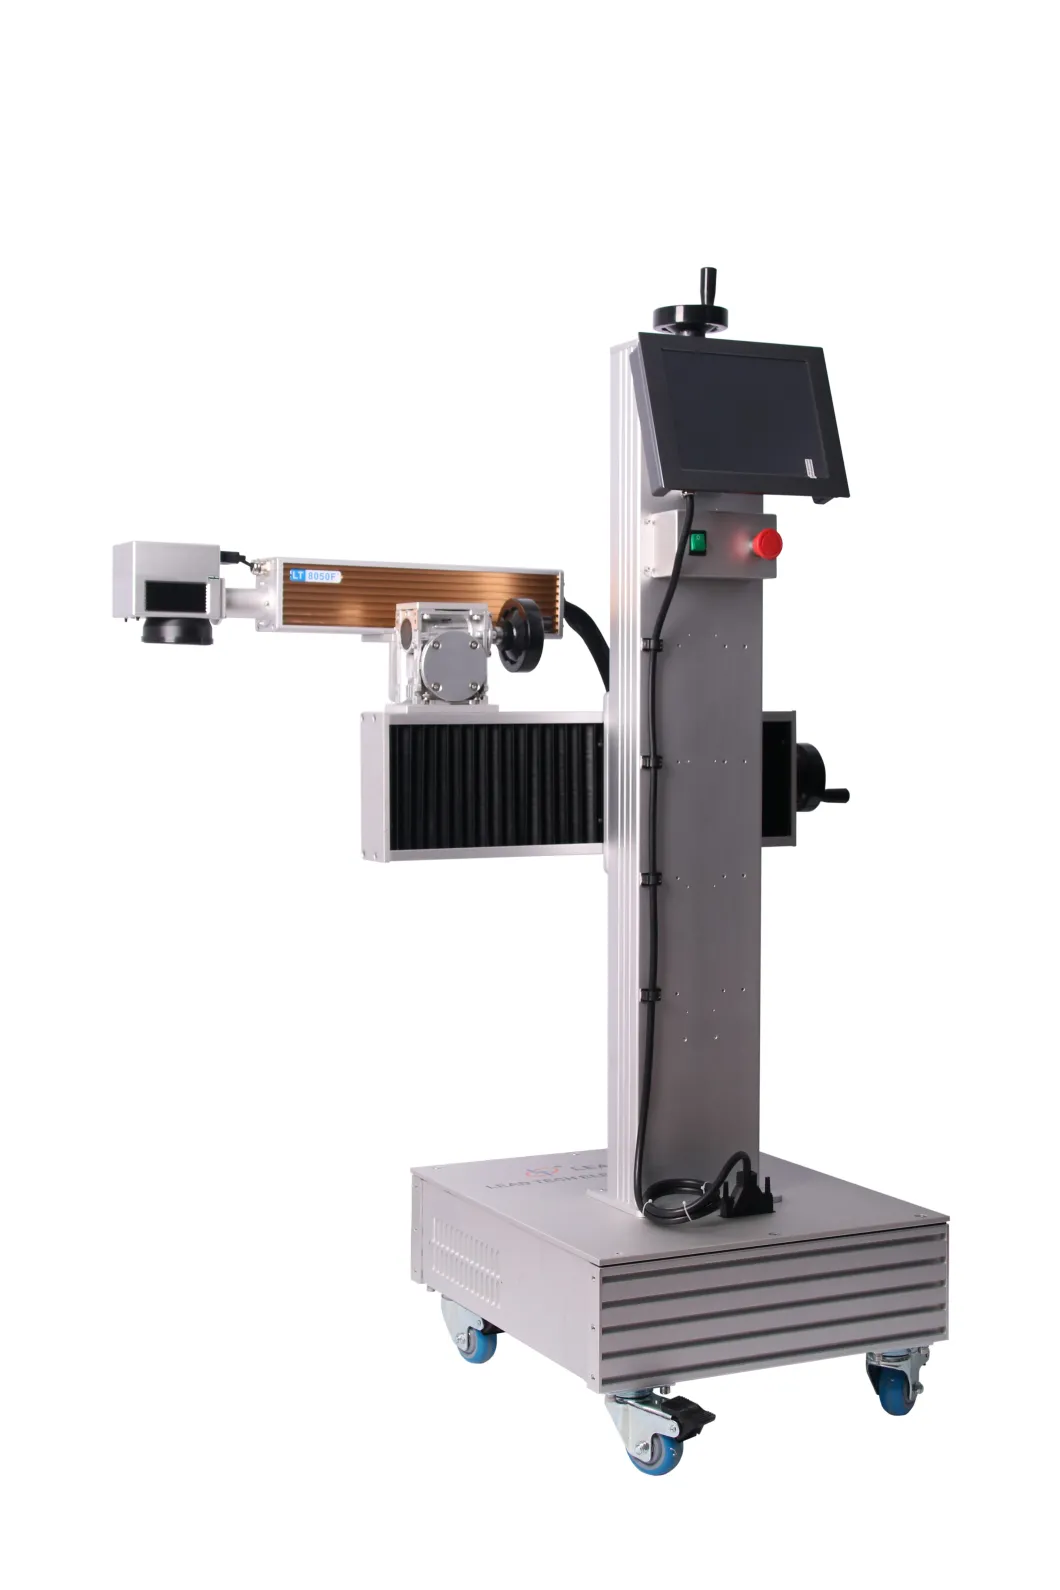 Lt8020f/Lt8030f/Lt8050f Fiber High Performance Metal Laser Marking Printer